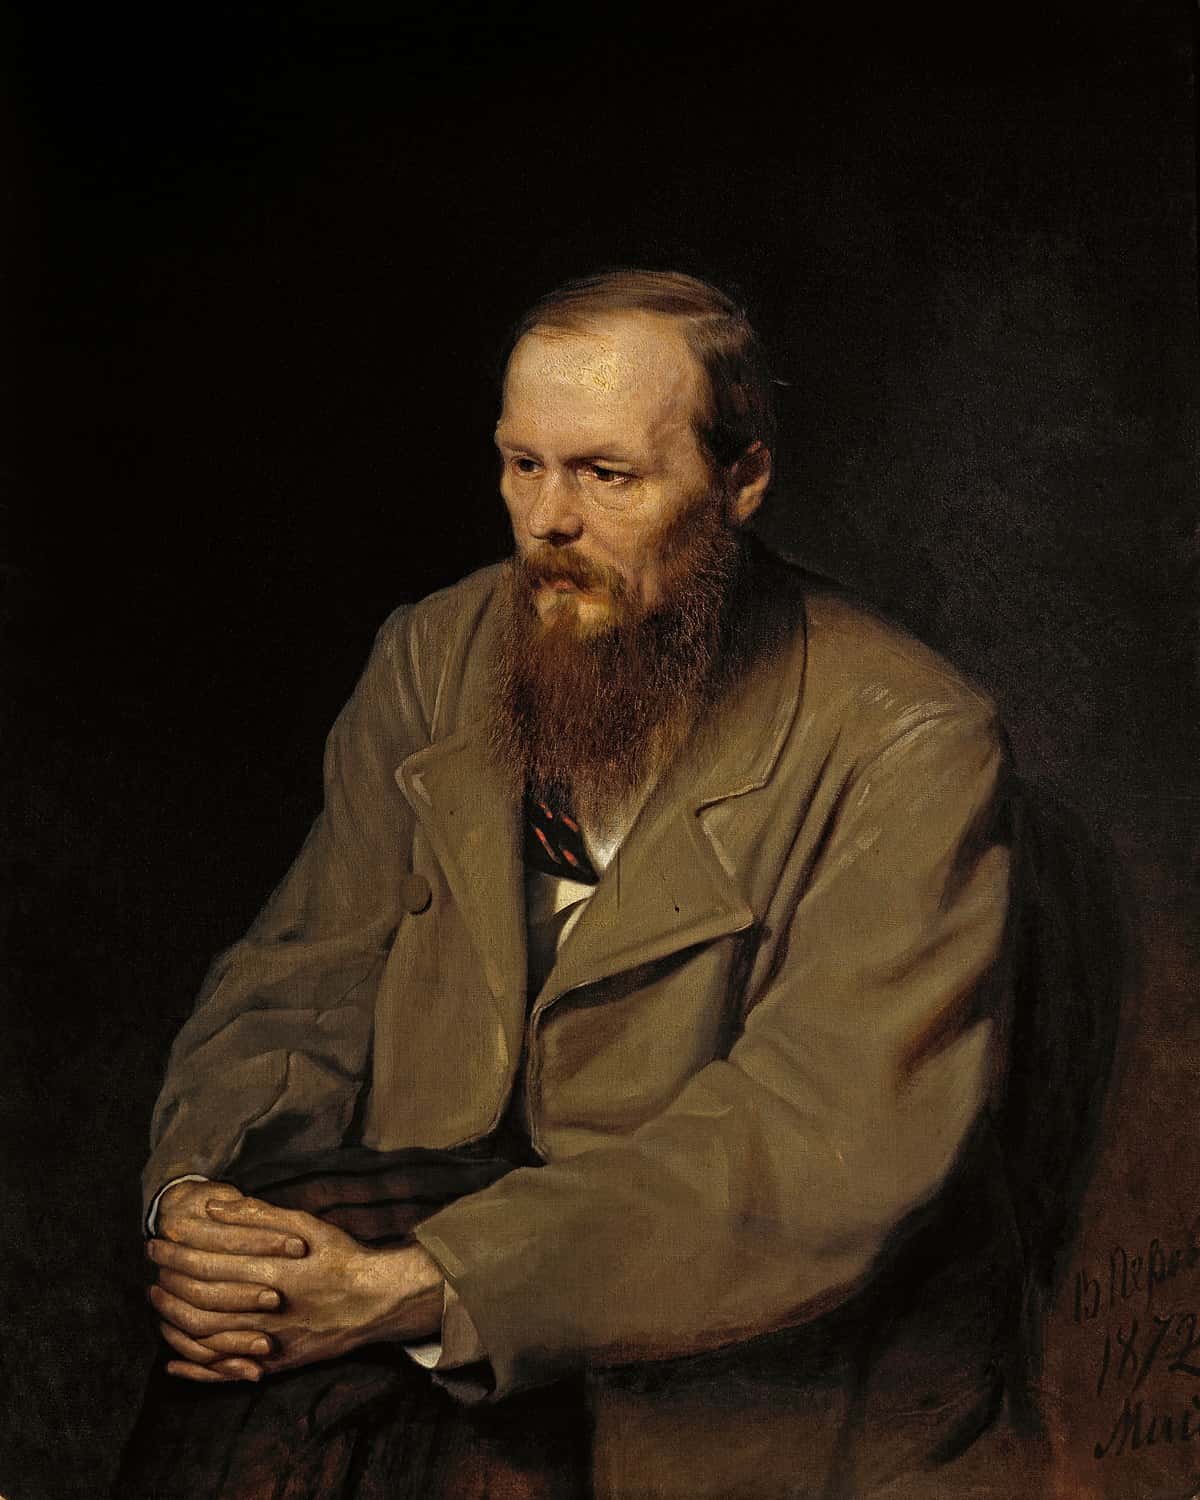 Author Fyodor Dostoevsky